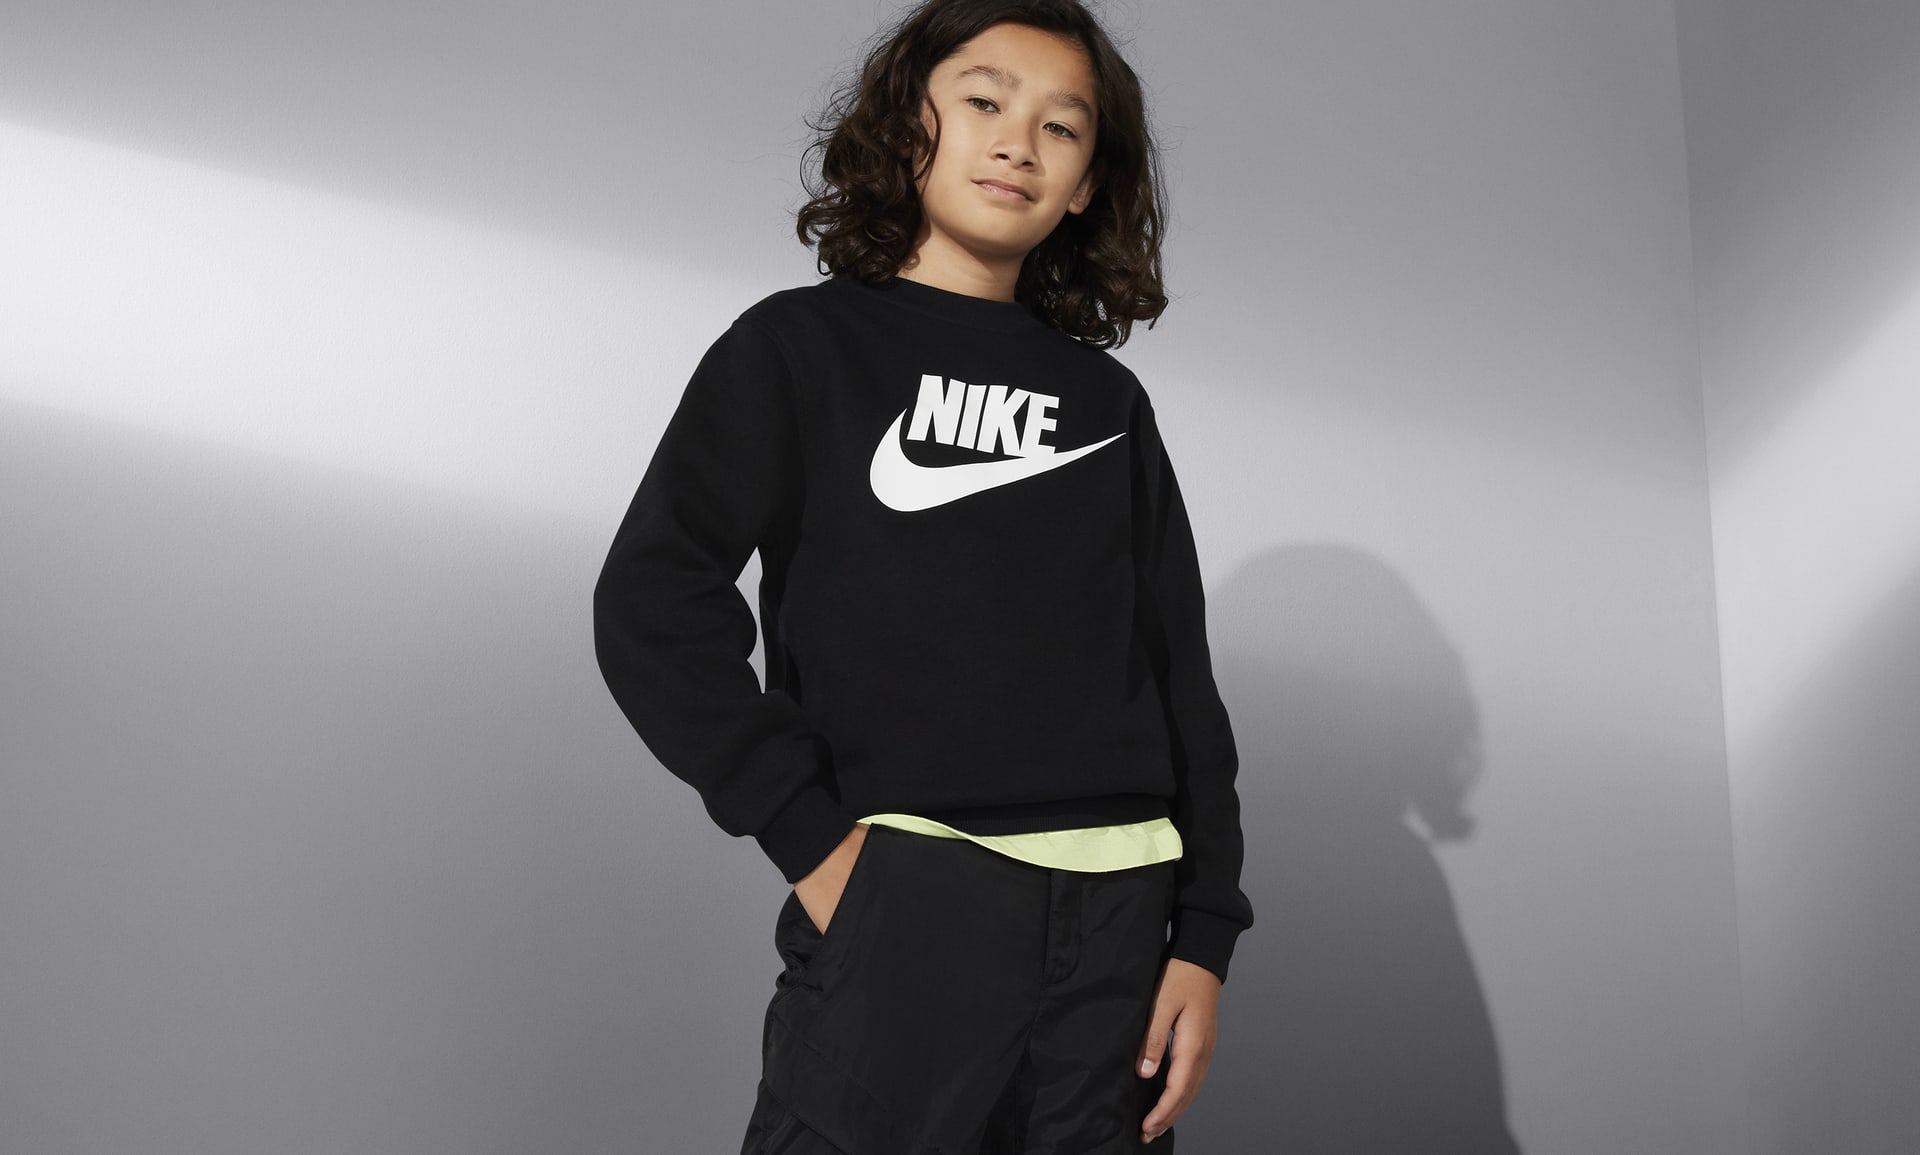 Nike Sportswear Club Fleece Big Kids' Sweatshirt.